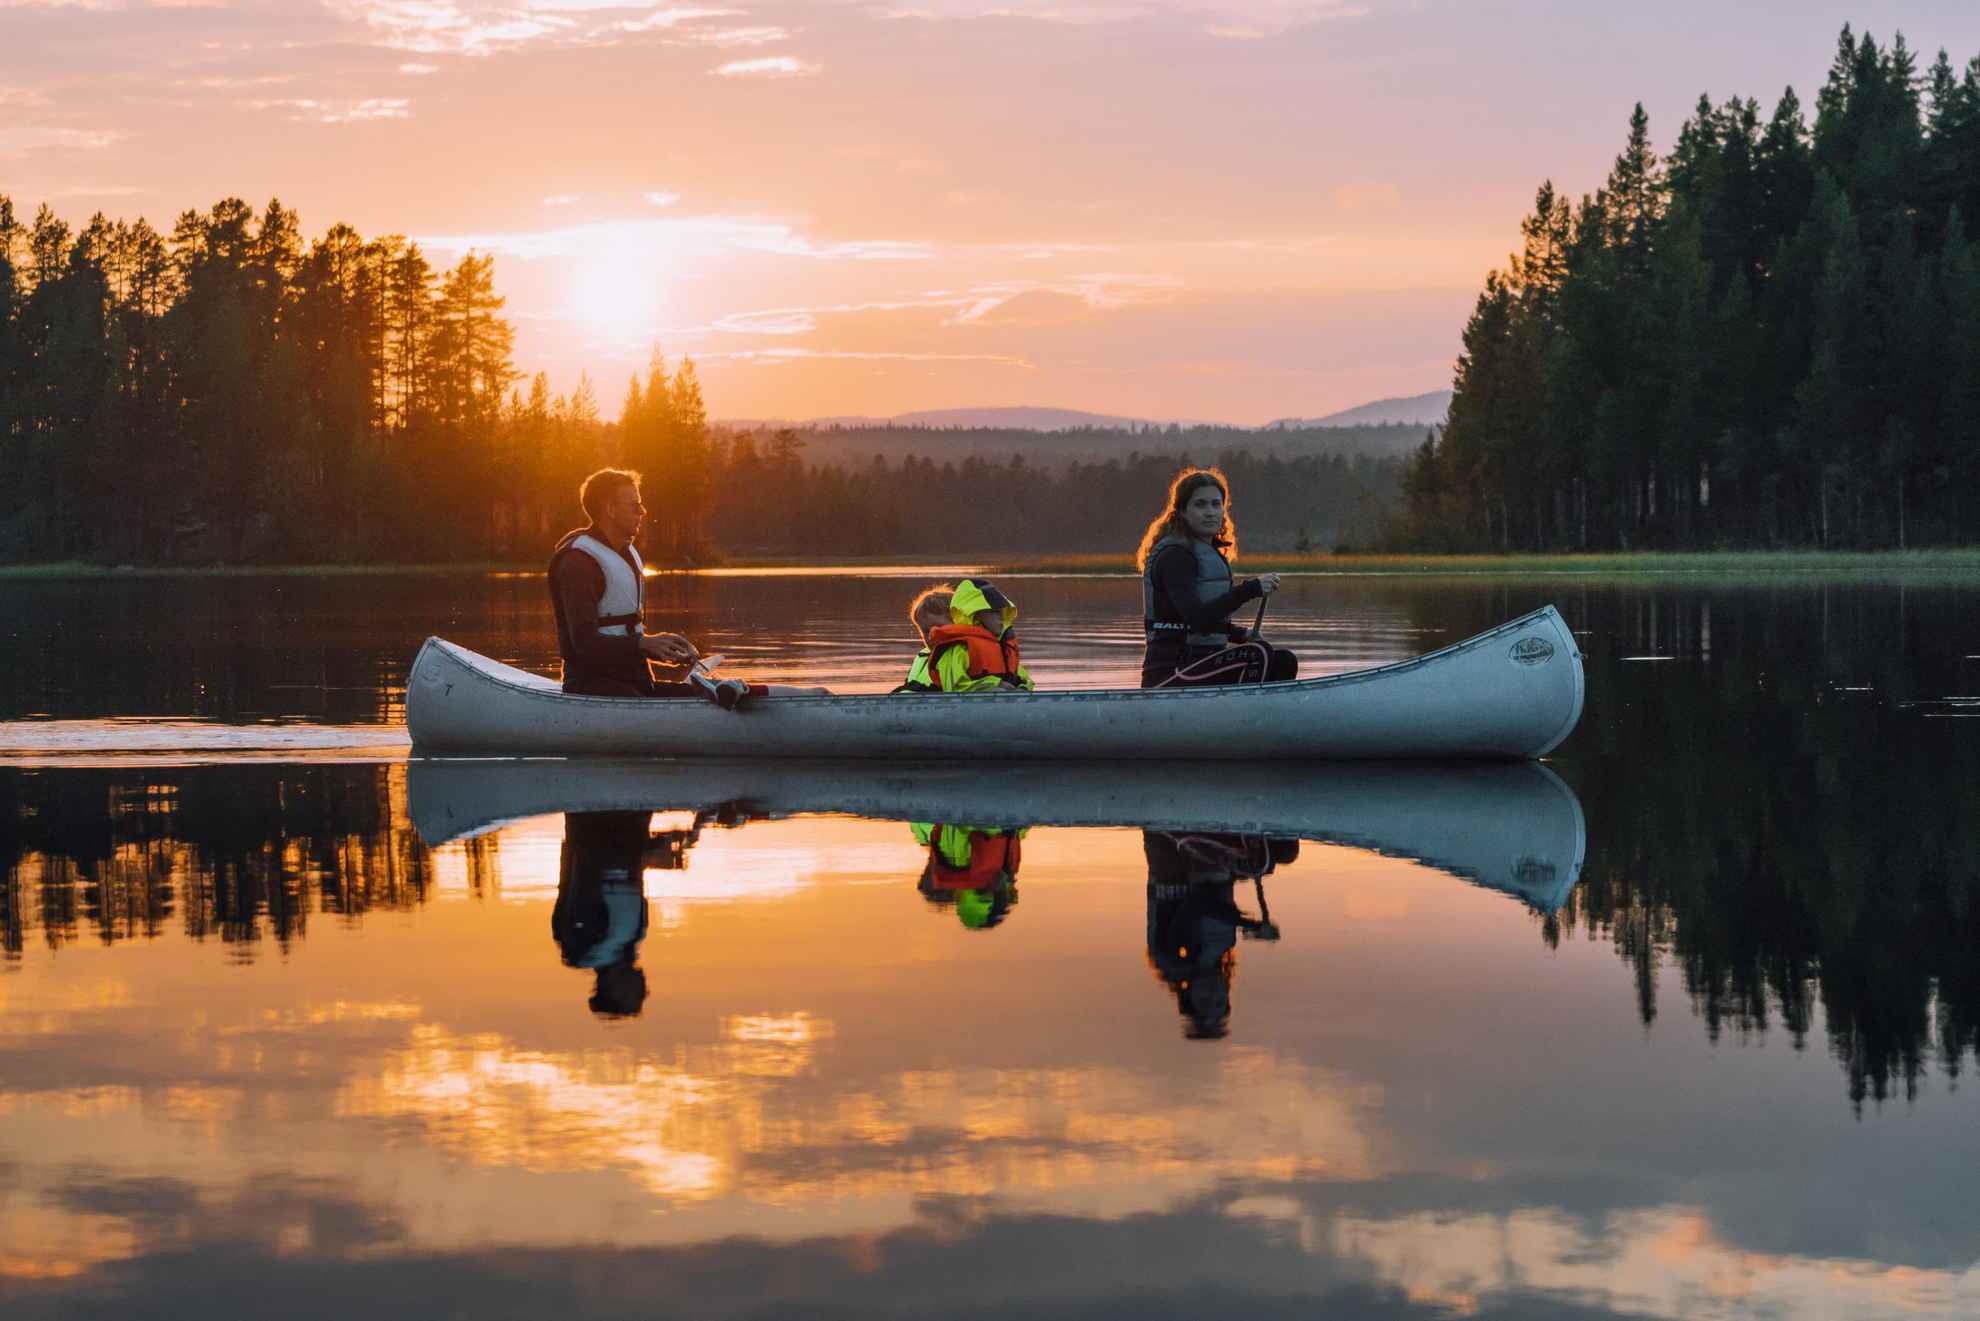 In einem Kanu sitzen 3 Personen, das Kanu gleitet entlang eines Sees im Sonnenuntergang